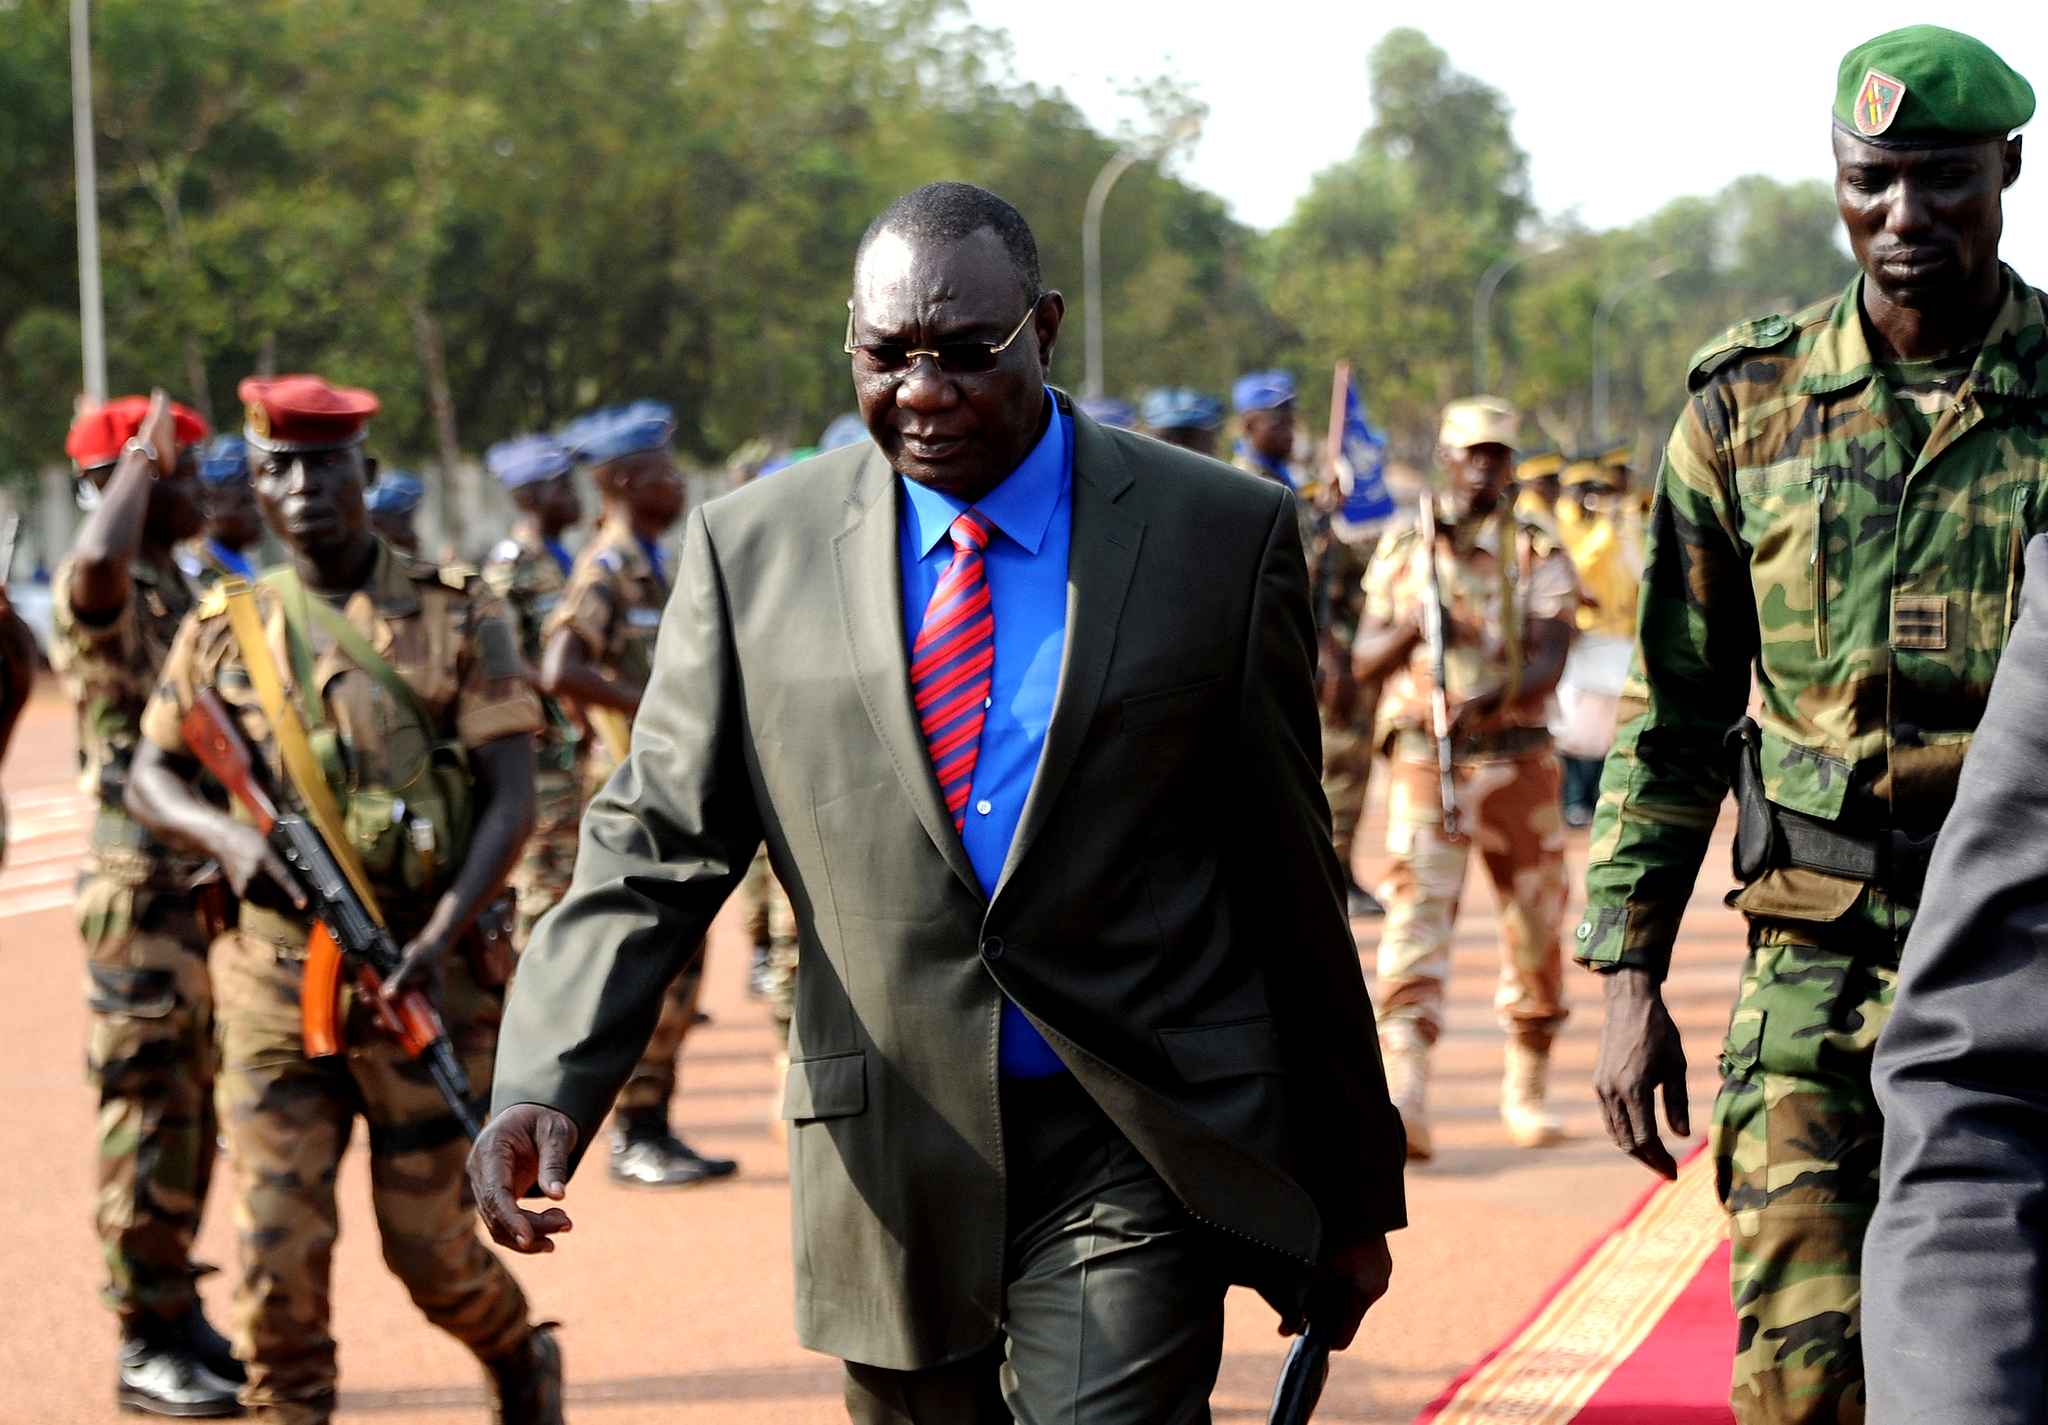 Centrafrique: l'ex-président Djotodia cible possible de sanctions de l'ONU